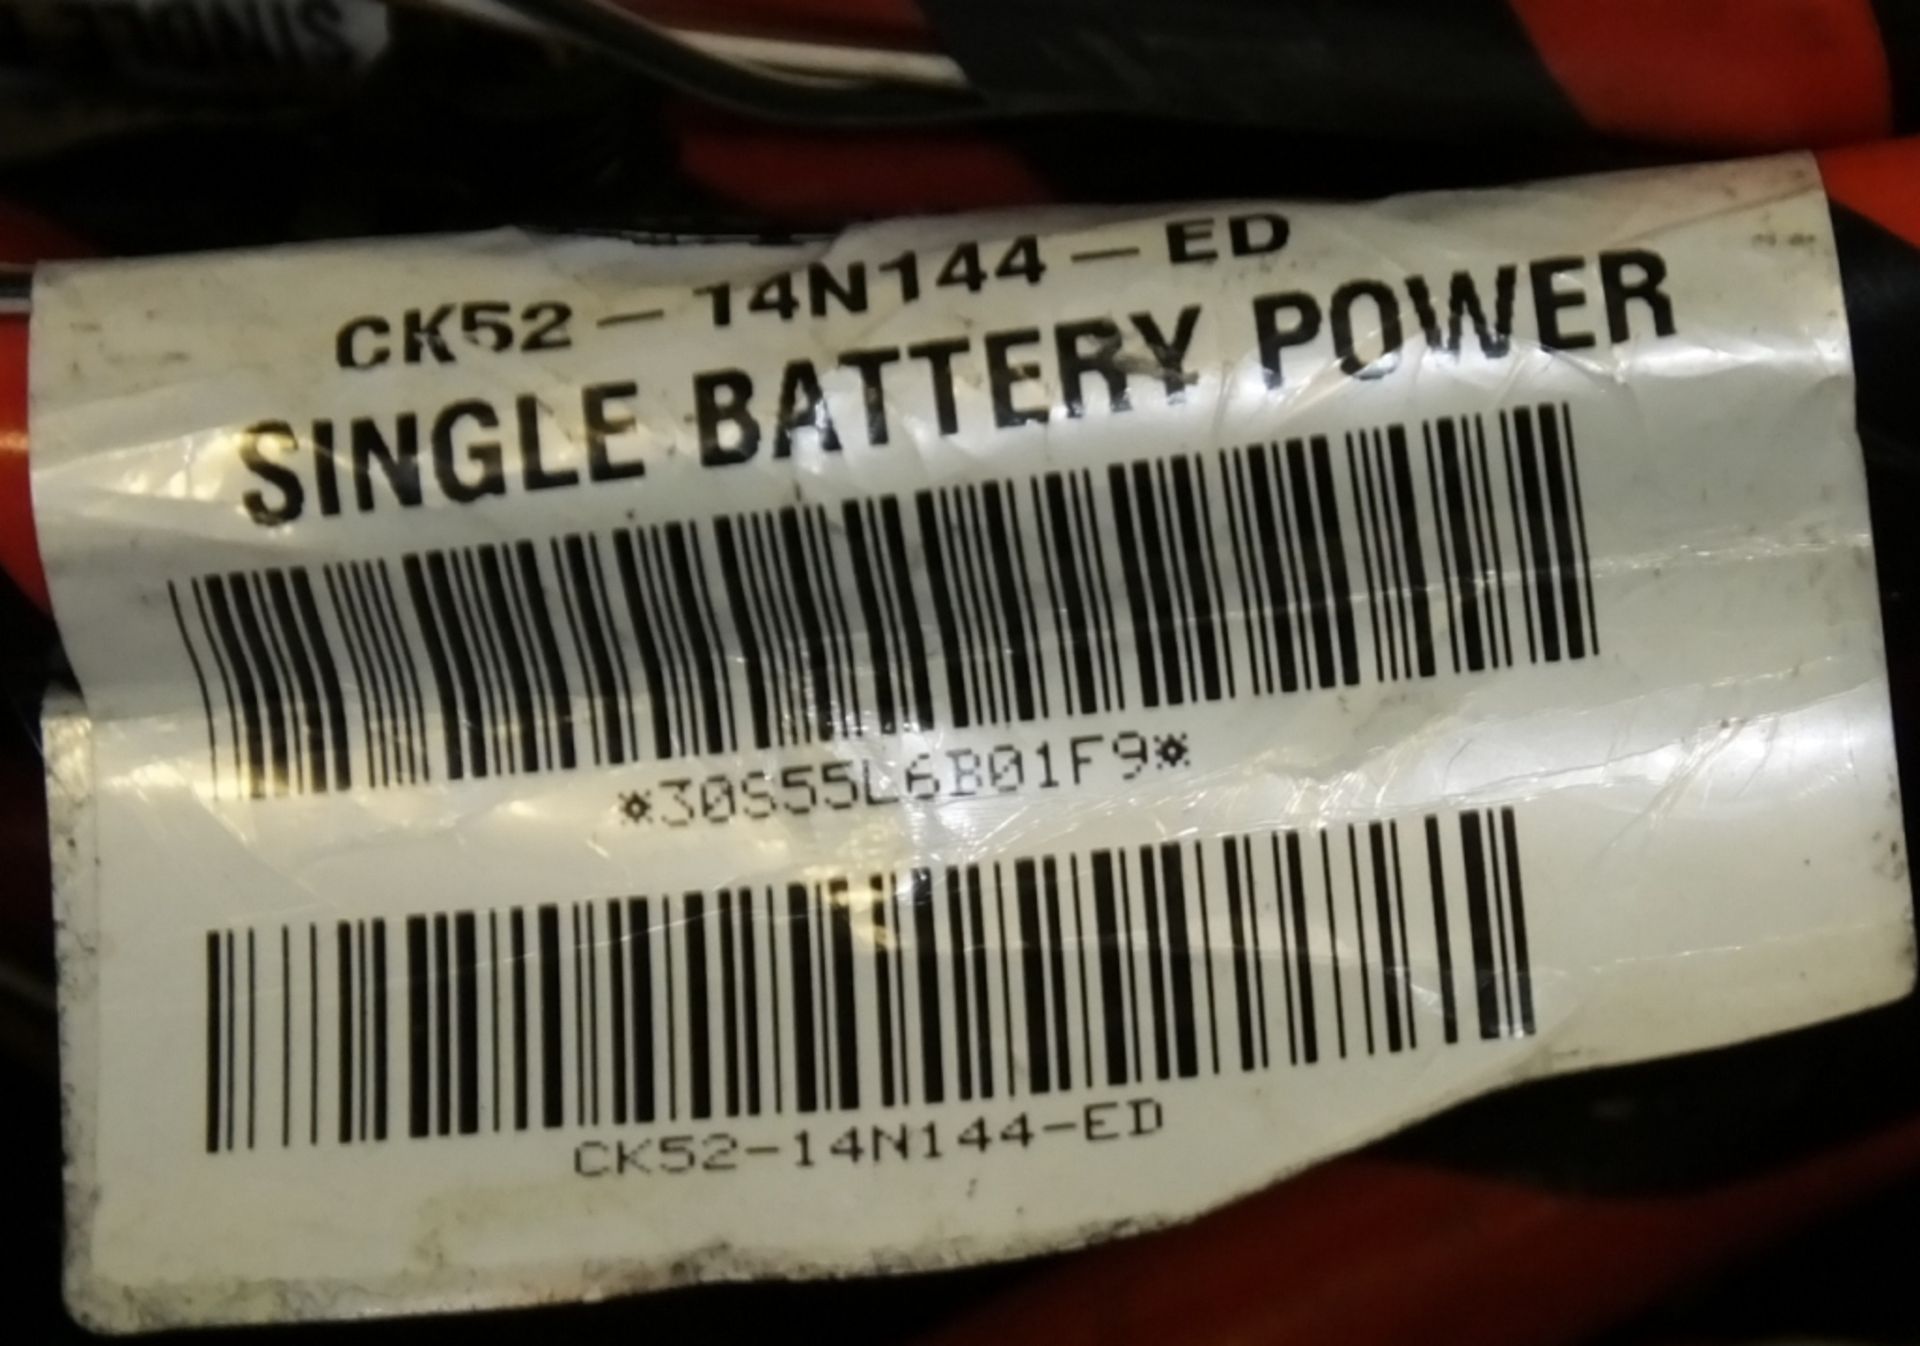 25x Jaguar / Land Rover Battery Cables - CK-52-14N144 - Bild 3 aus 5